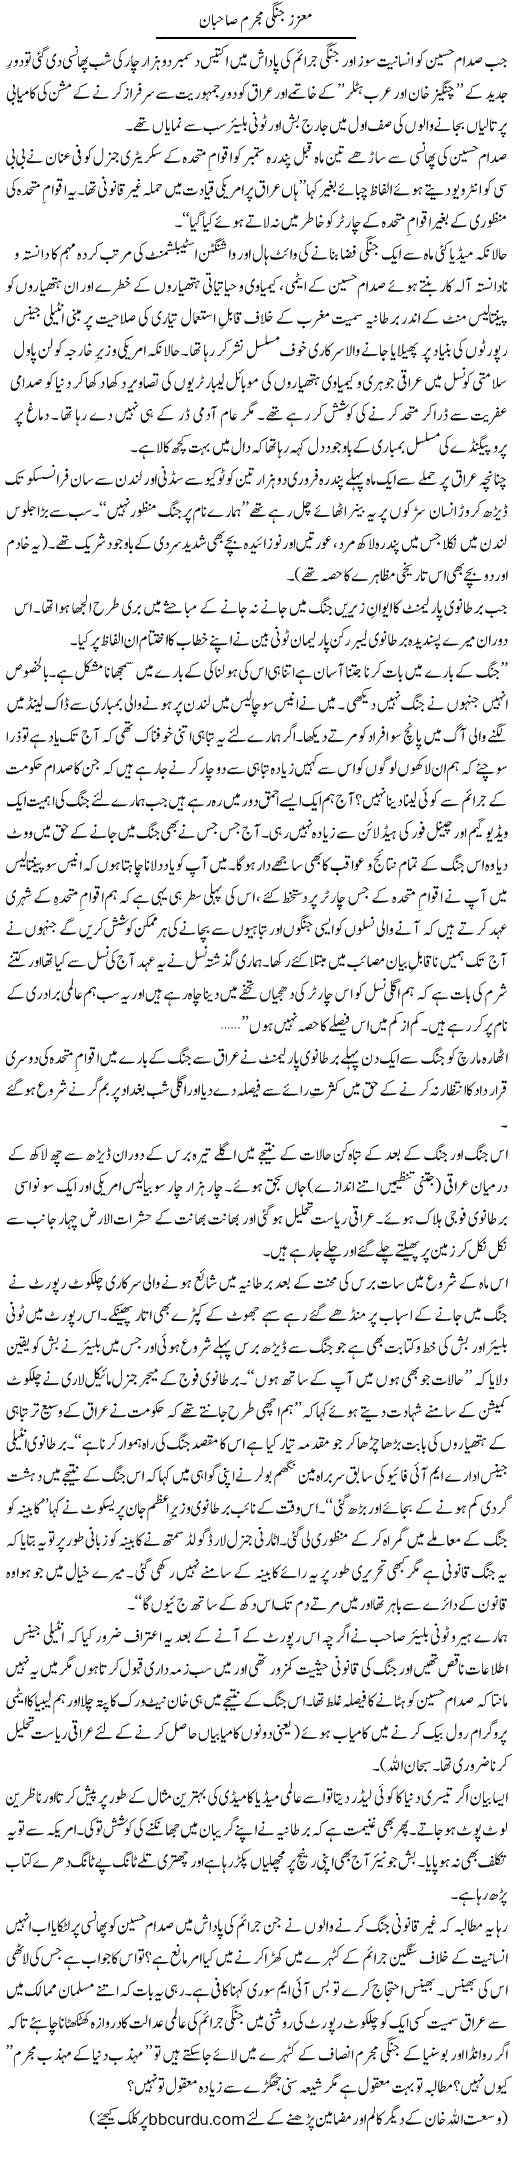 Muaziz jungi mujrim Sahiban | Wusat Ullah Khan | Daily Urdu Columns